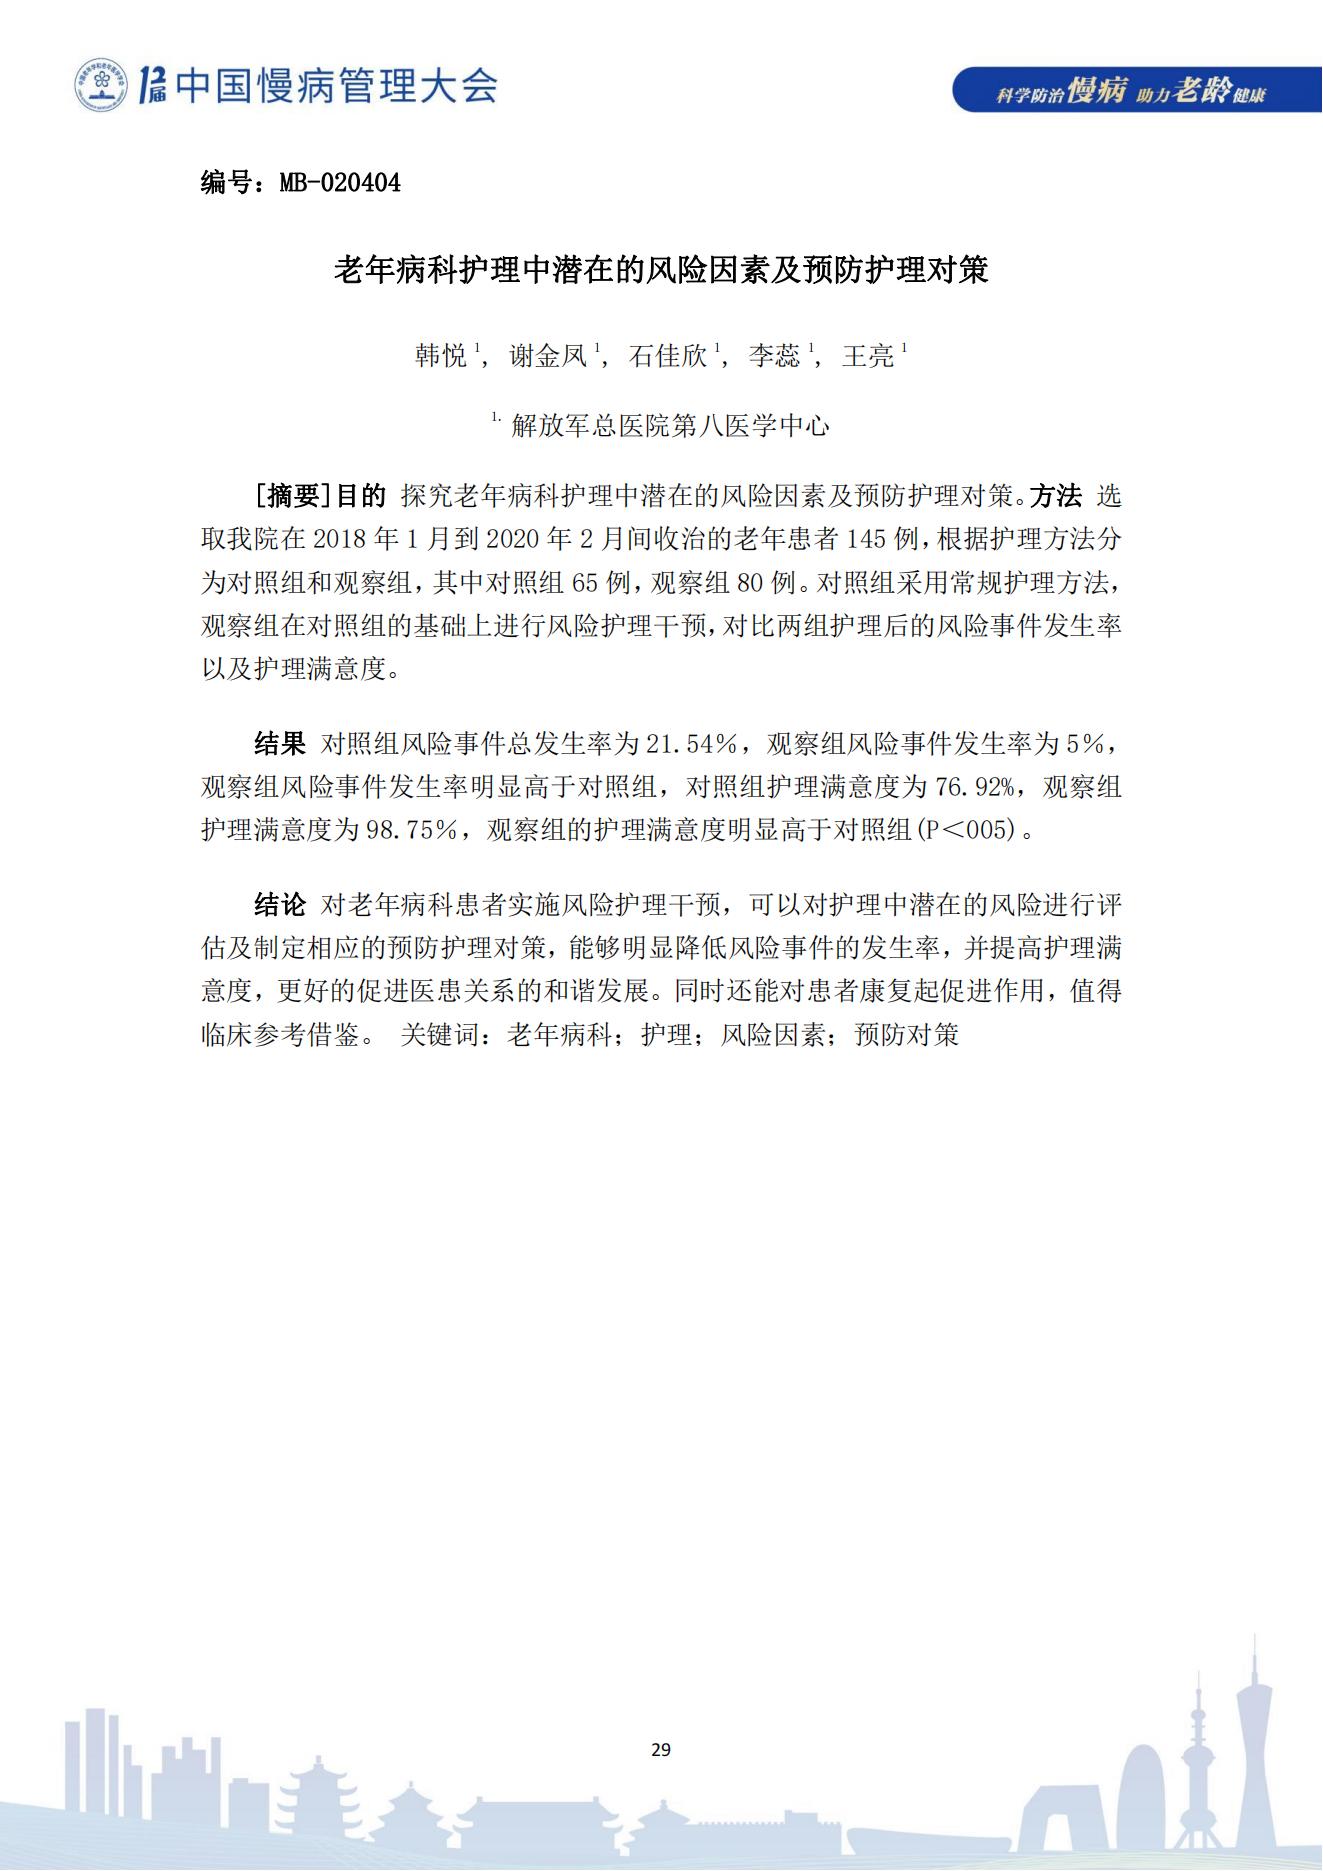 第十二届中国慢病管理大会获奖论文（电子版）0823_29.jpg